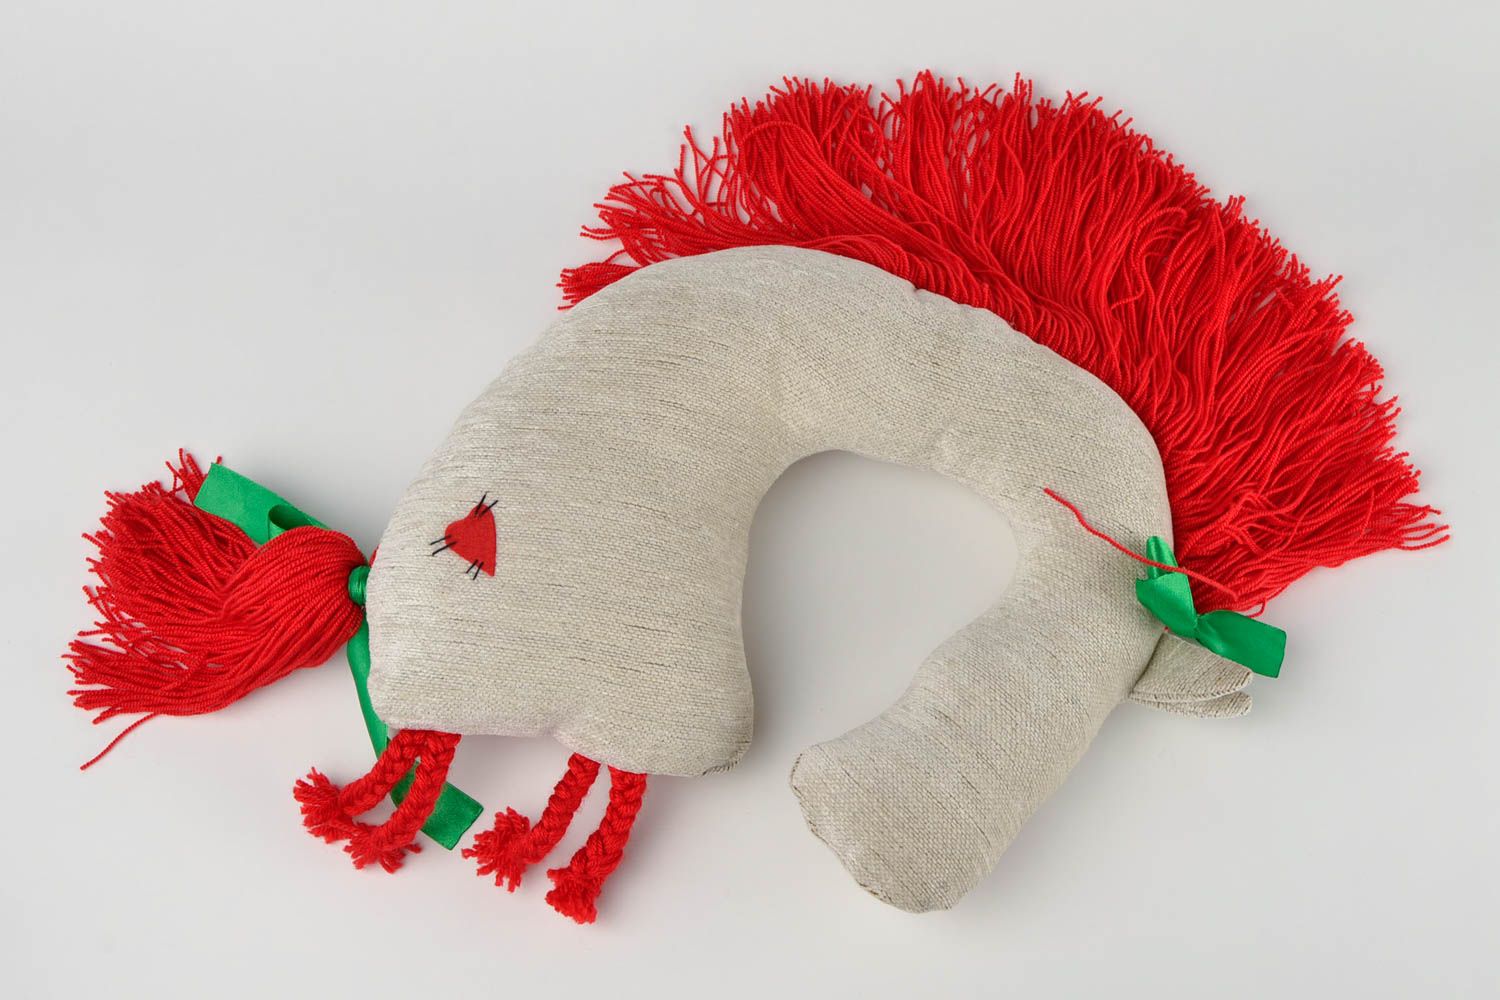 Игрушка-подушка ручной работы детская игрушка Лошадка красная игрушка для детей фото 4